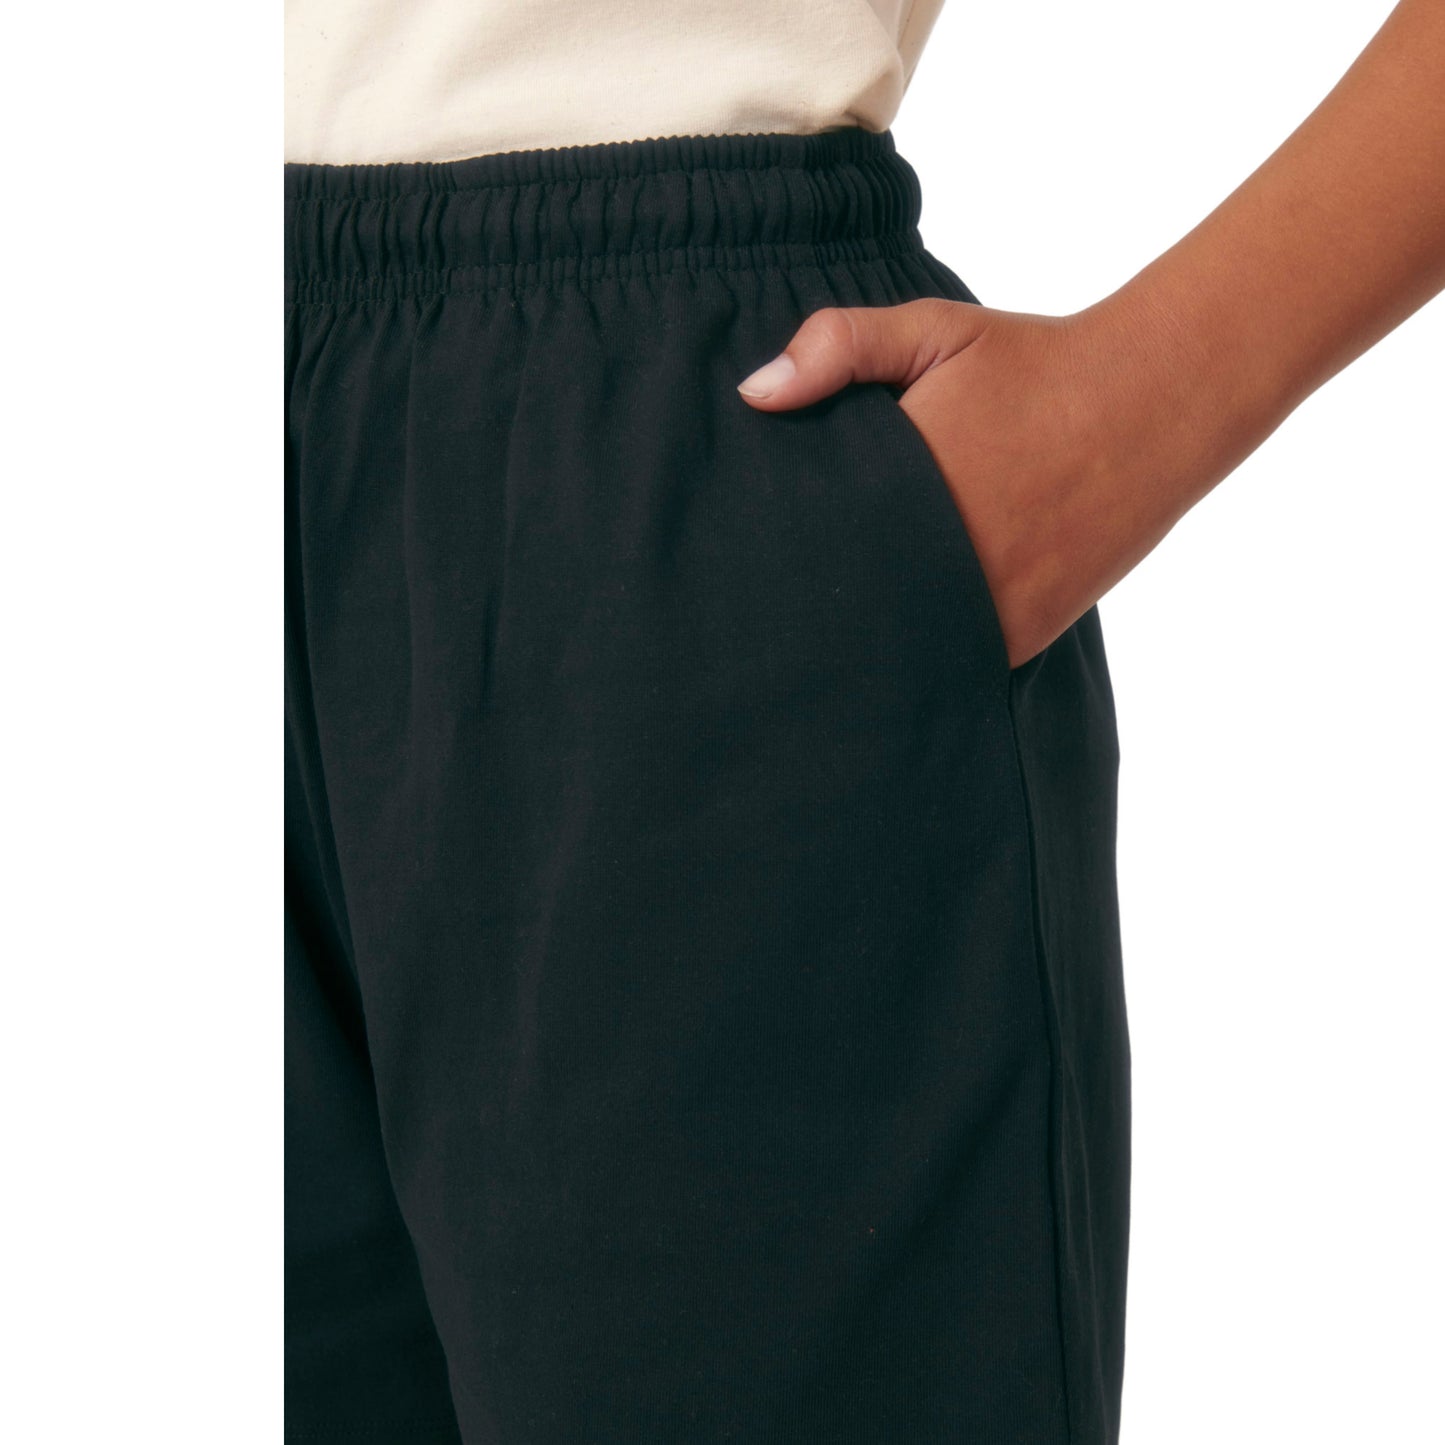 Pantaloncino corto unisex leggero